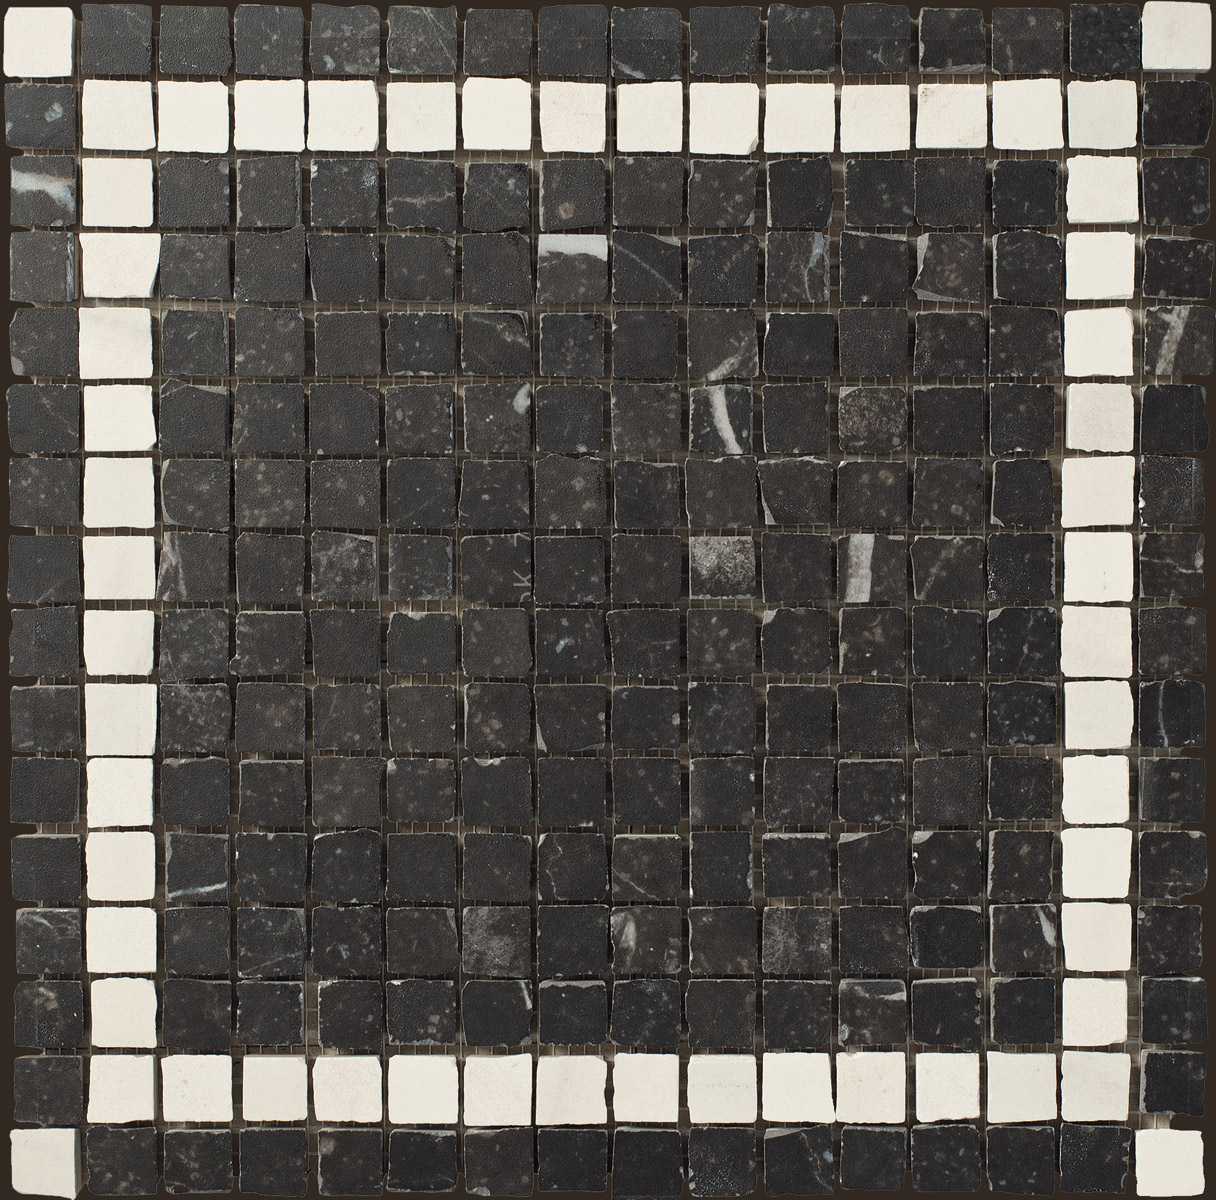 Imola Genus Beige Natural Flat Matt Beige 156307 glatt matt natur 30x30cm Mosaik 10,5mm